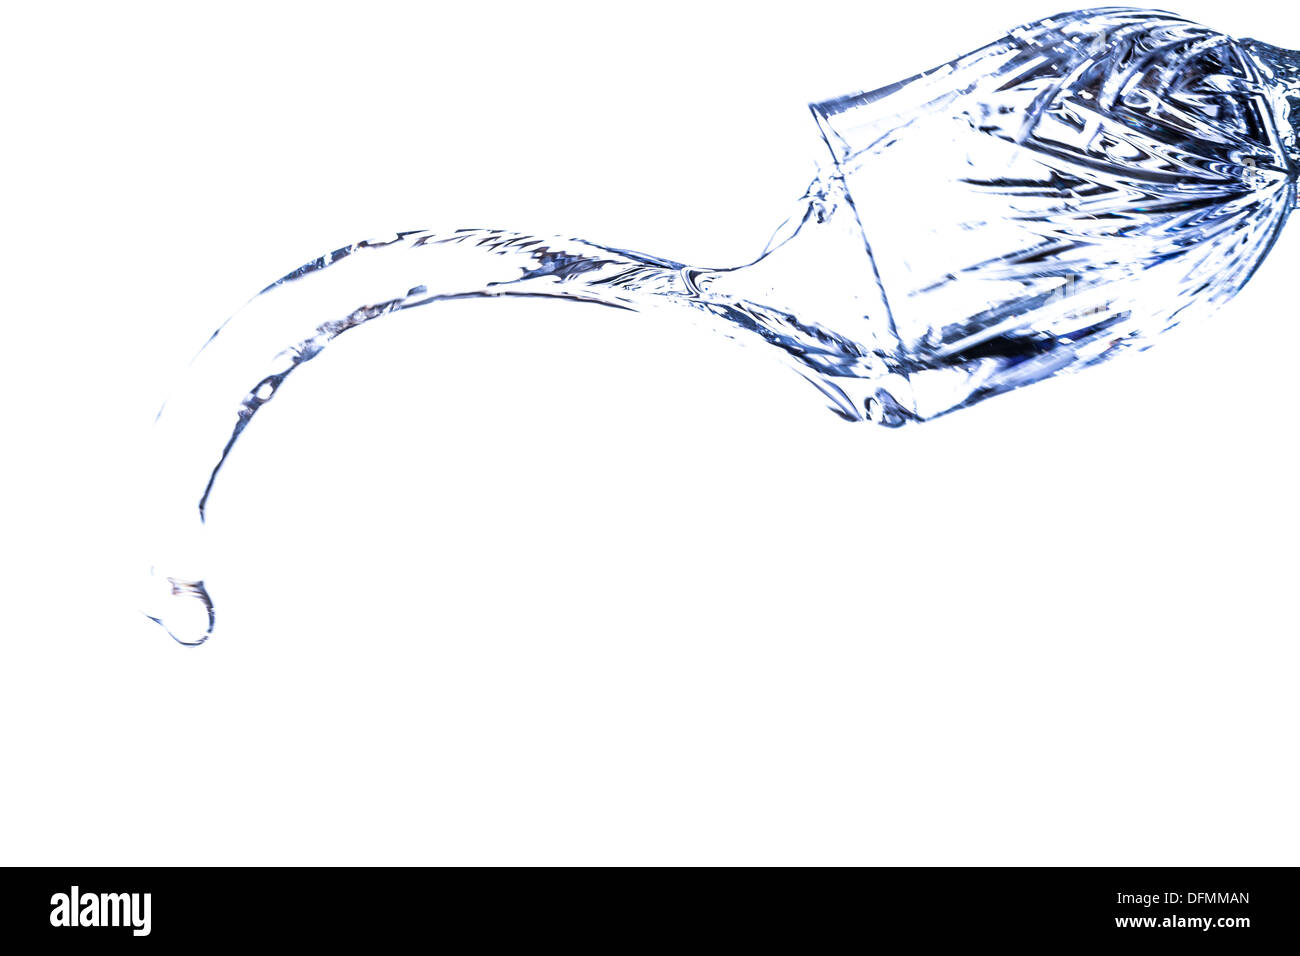 Eine schöne Form, erstellt von der flüssigen Bewegung von Wasser plantschen, wie es aus einem Glas geworfen ist Stockfoto